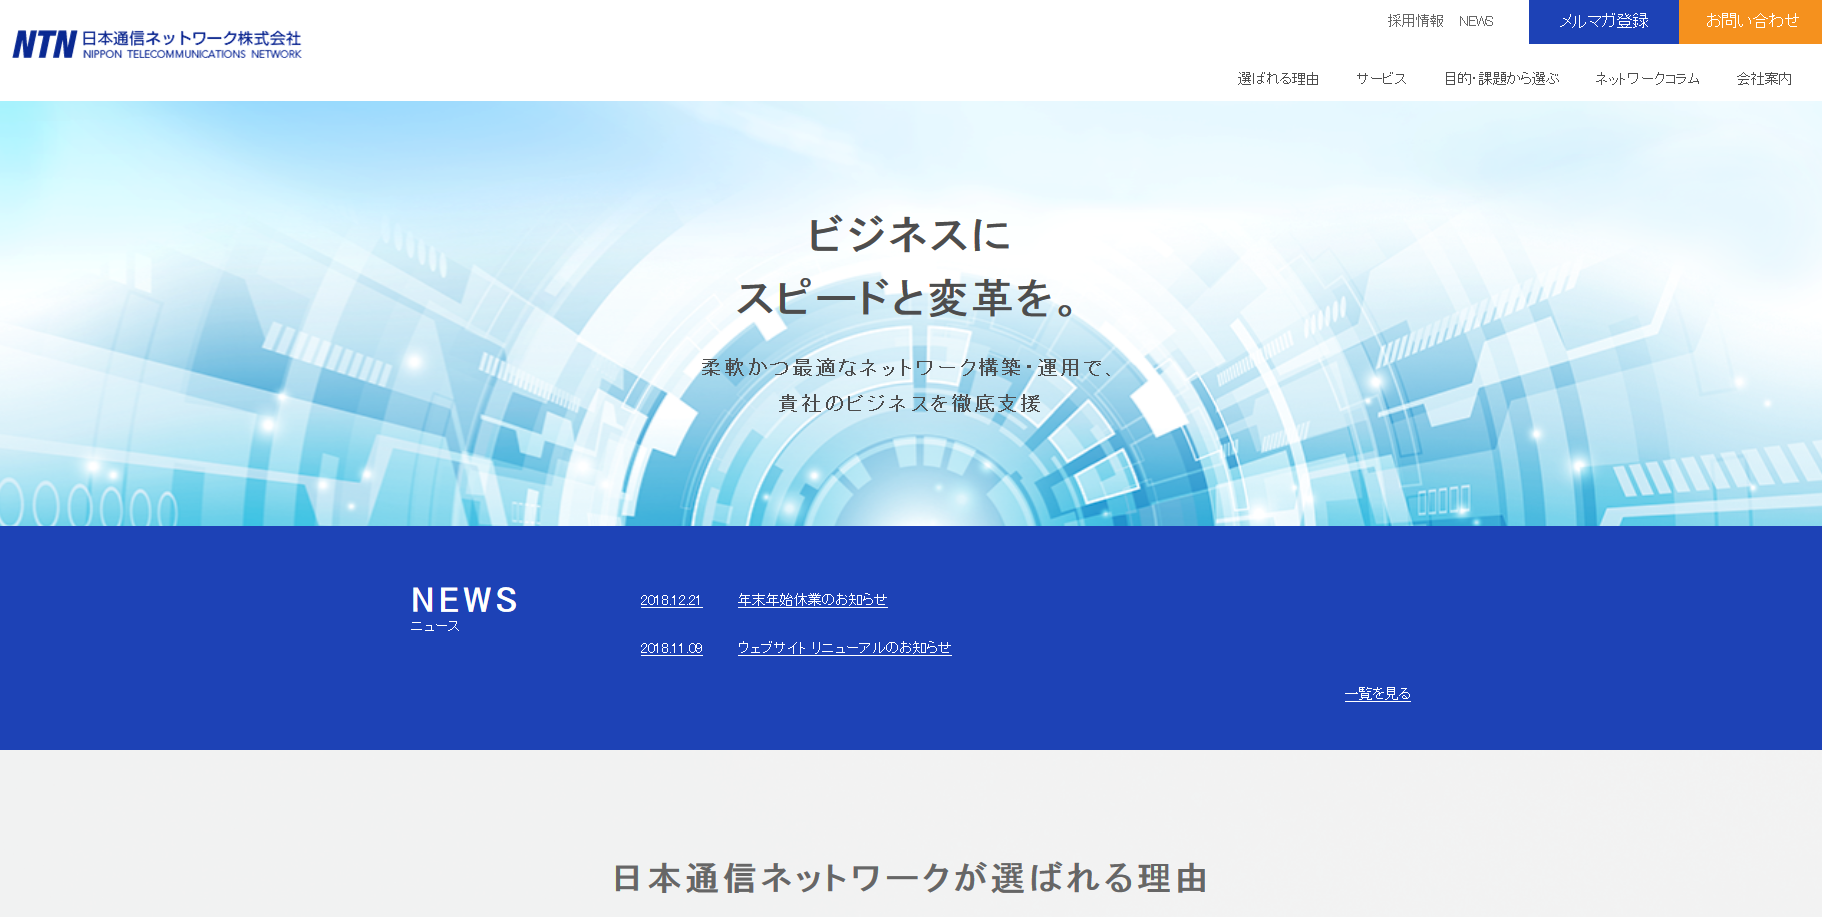 日本通信ネットワーク株式会社の日本通信ネットワーク株式会社サービス